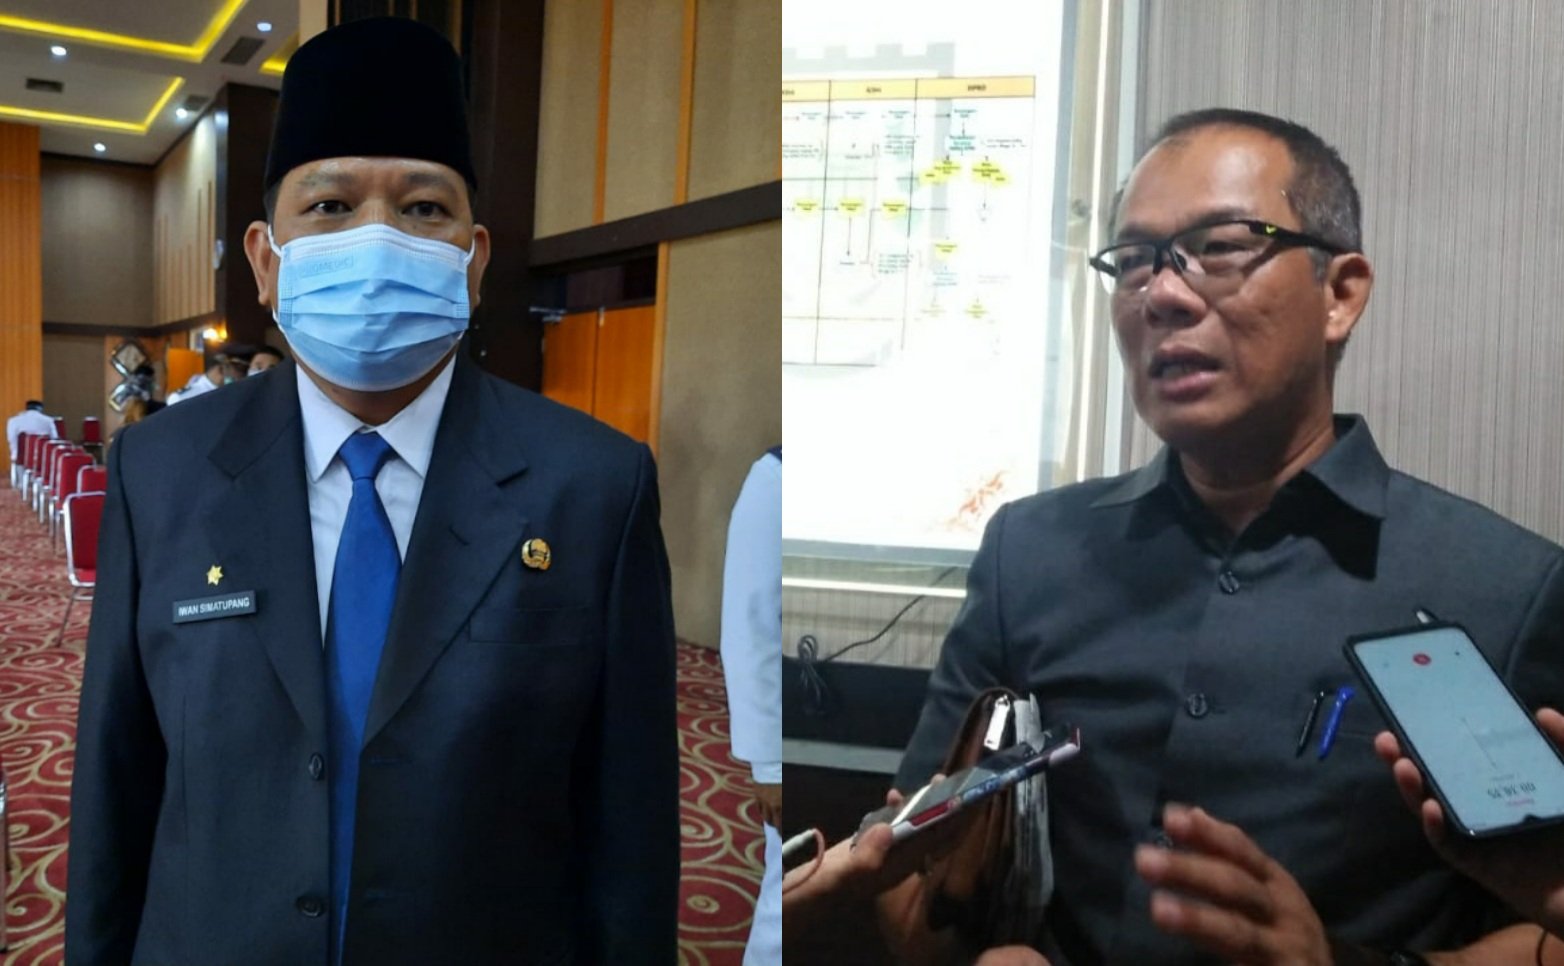 Disebut Takut Potong Bando Ilegal, Kasatpol PP Pekanbaru : Siapa Dewan Yang Ngomong Itu?